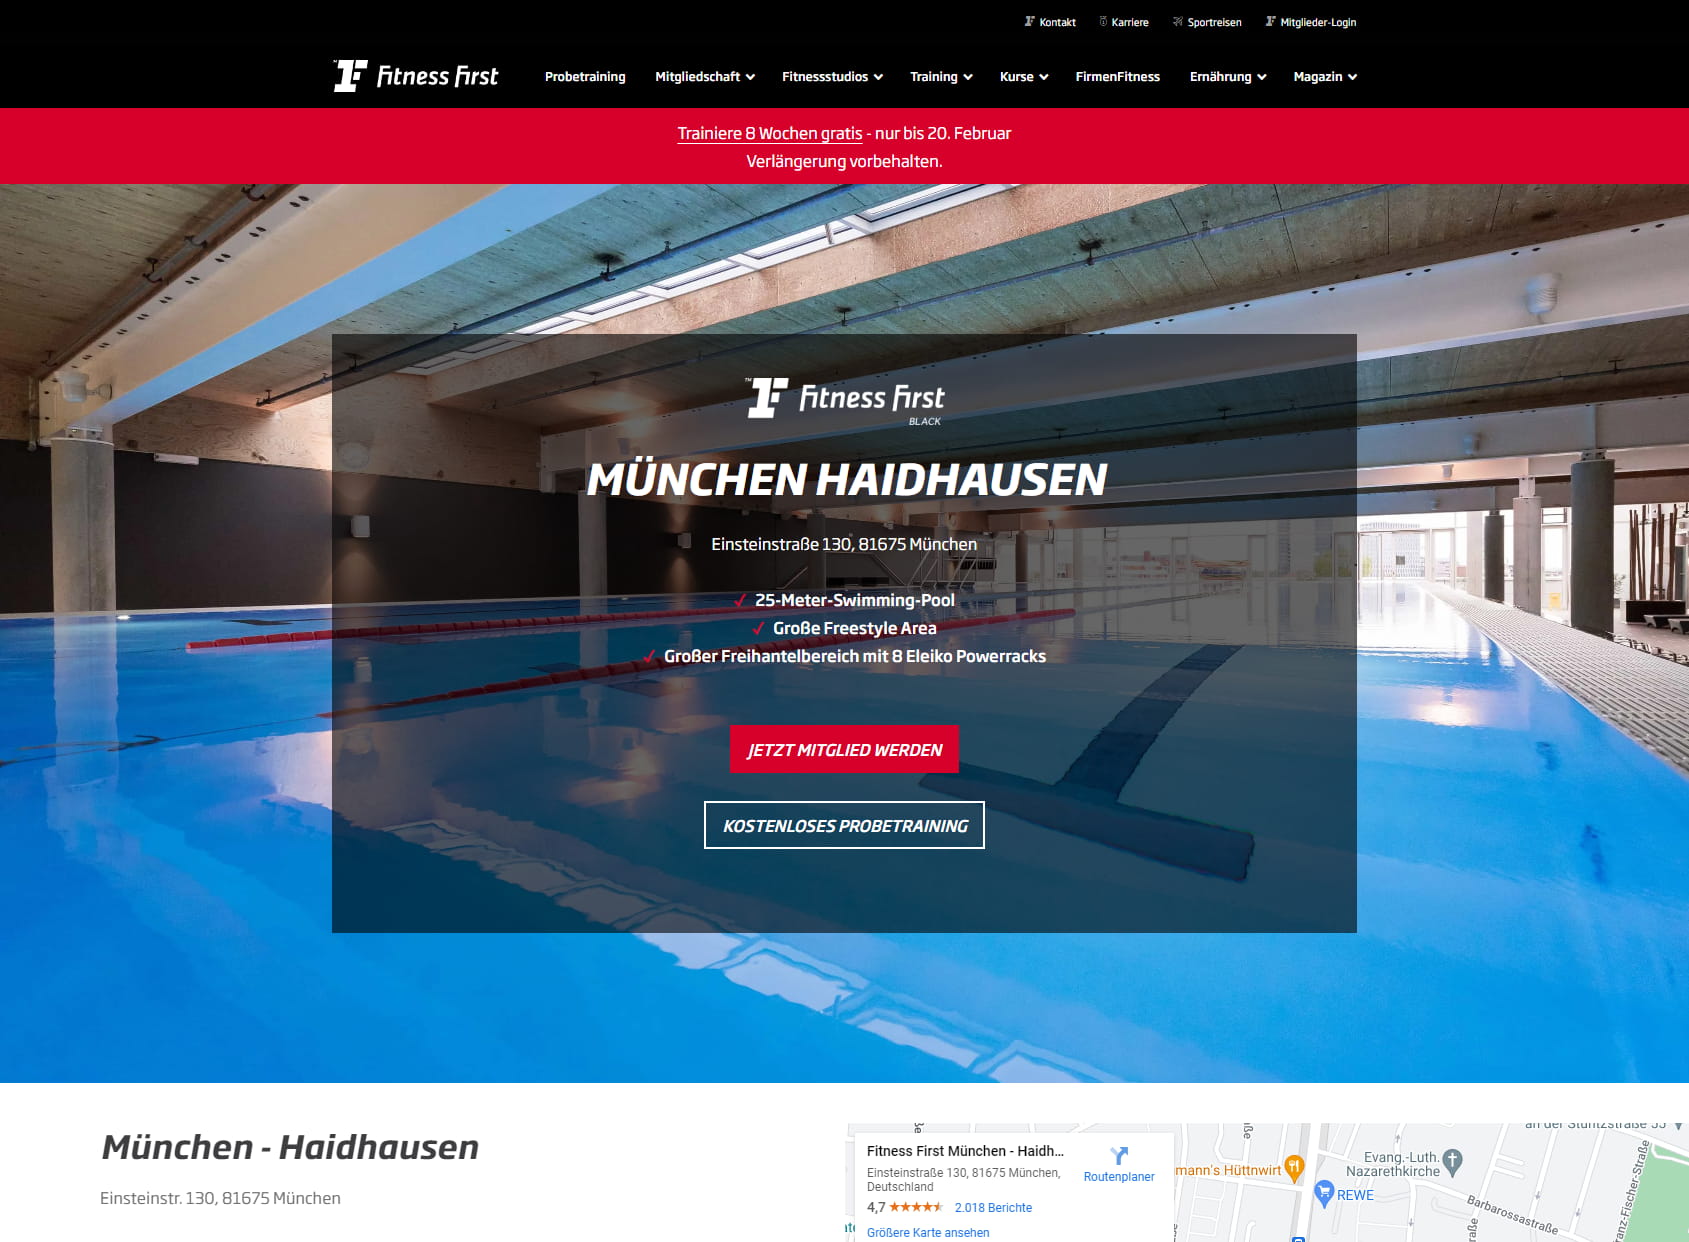 Fitness First Munich - Haidhausen